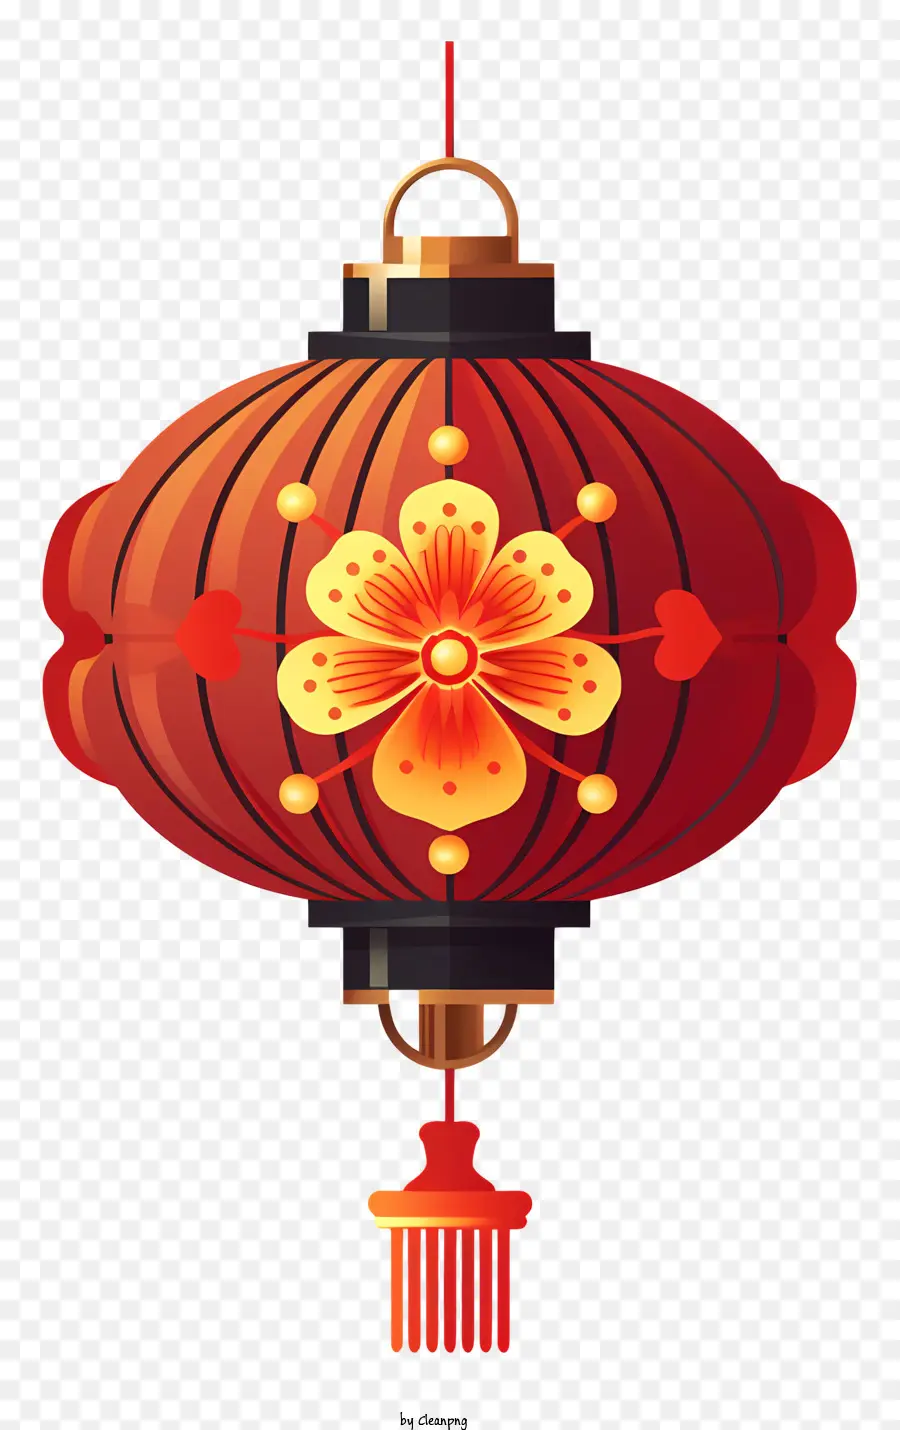 đèn lồng Trung Quốc - Đèn lồng đỏ Trung Quốc truyền thống với hoa văn hoa